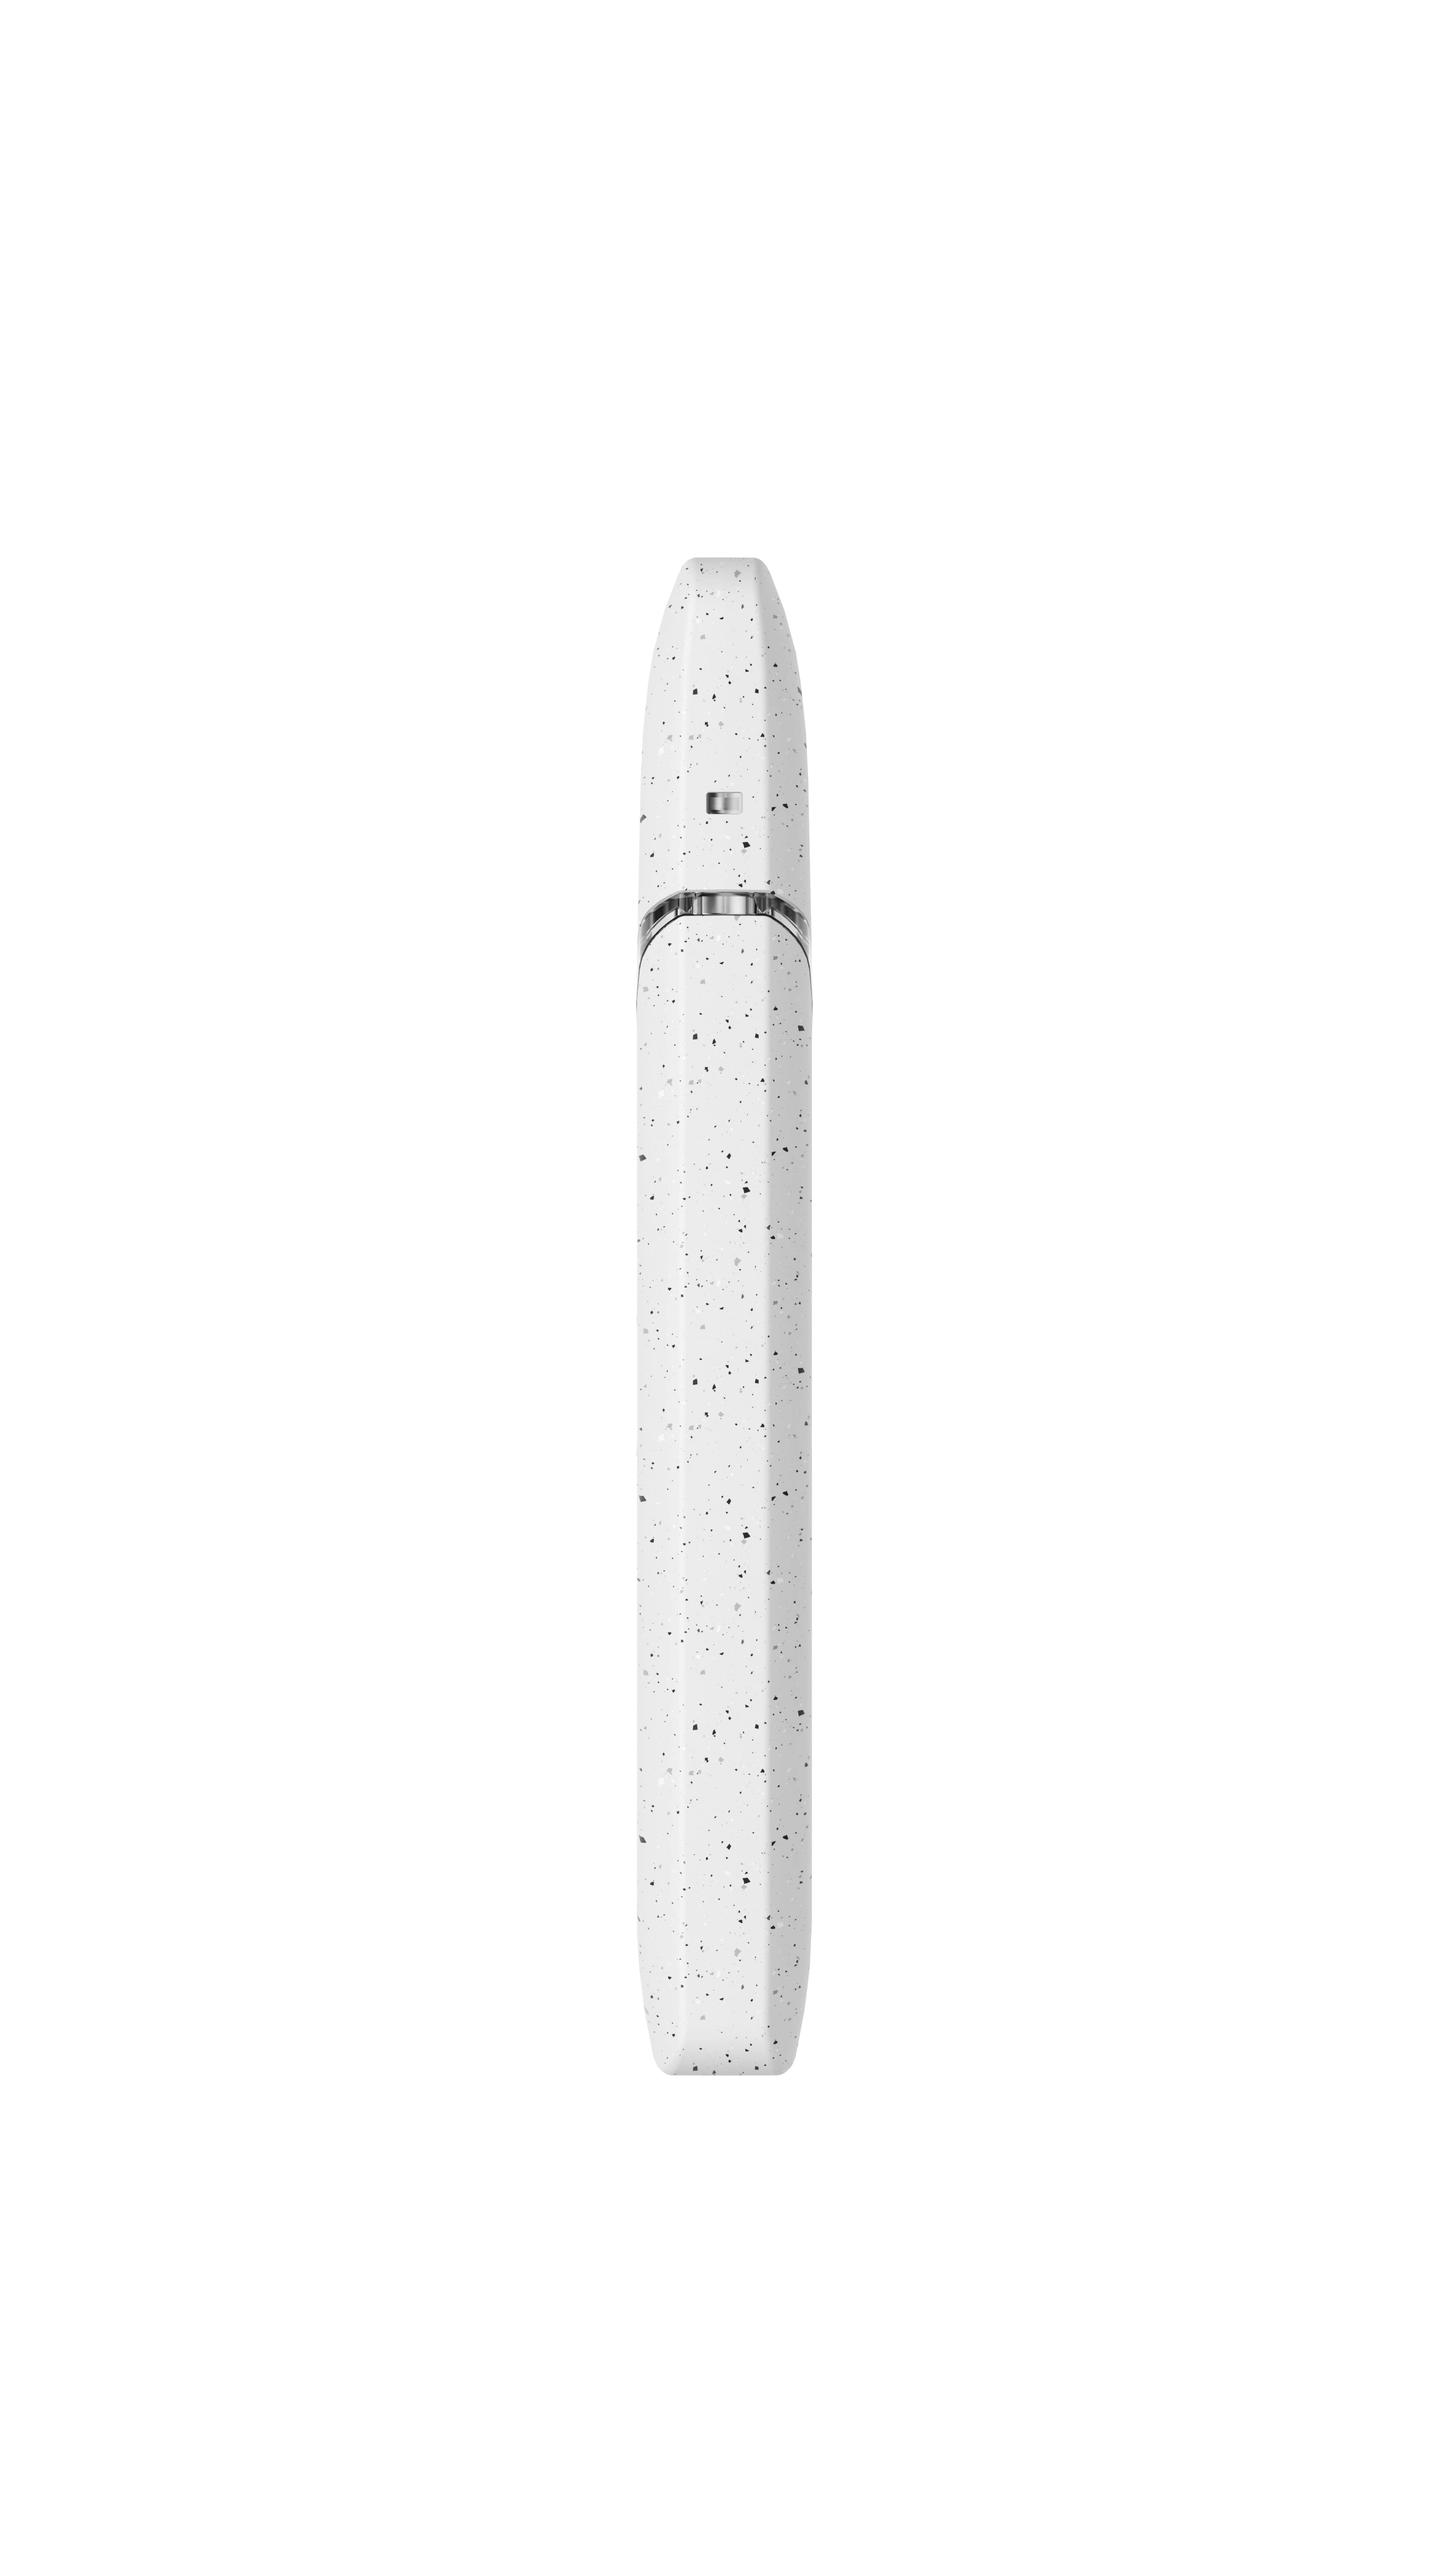 510 картридж Vape 6 мл 400 мА/ч Оптовая продажа высококачественный дешево одноразовый Электронный сигарет пустой картридж ручки формы CB-D.